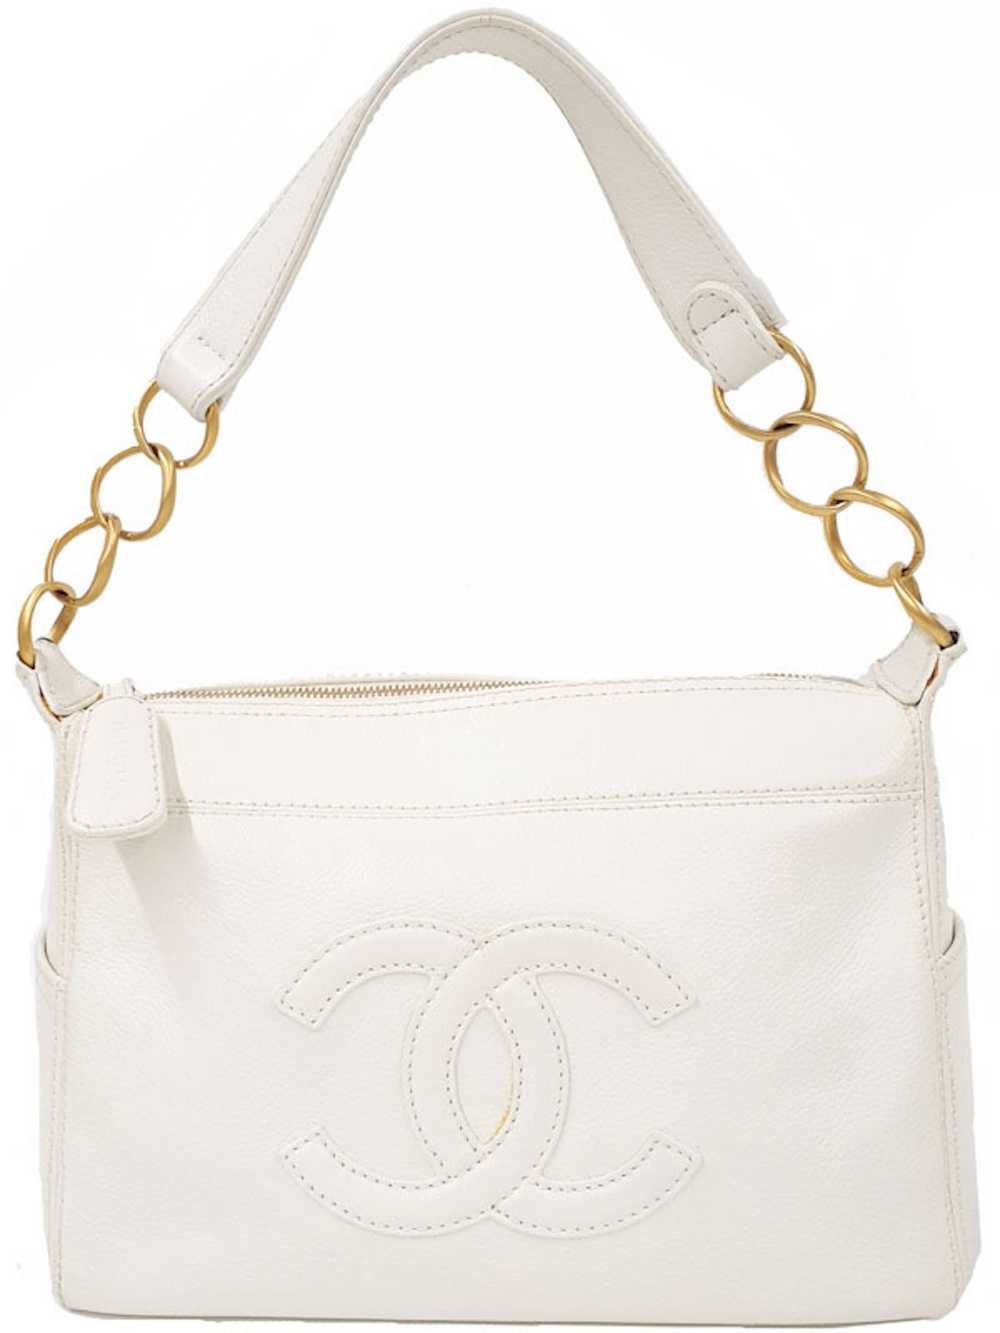 Chanel Chanel Coco Mark Semi-shoulder Bag white - image 1